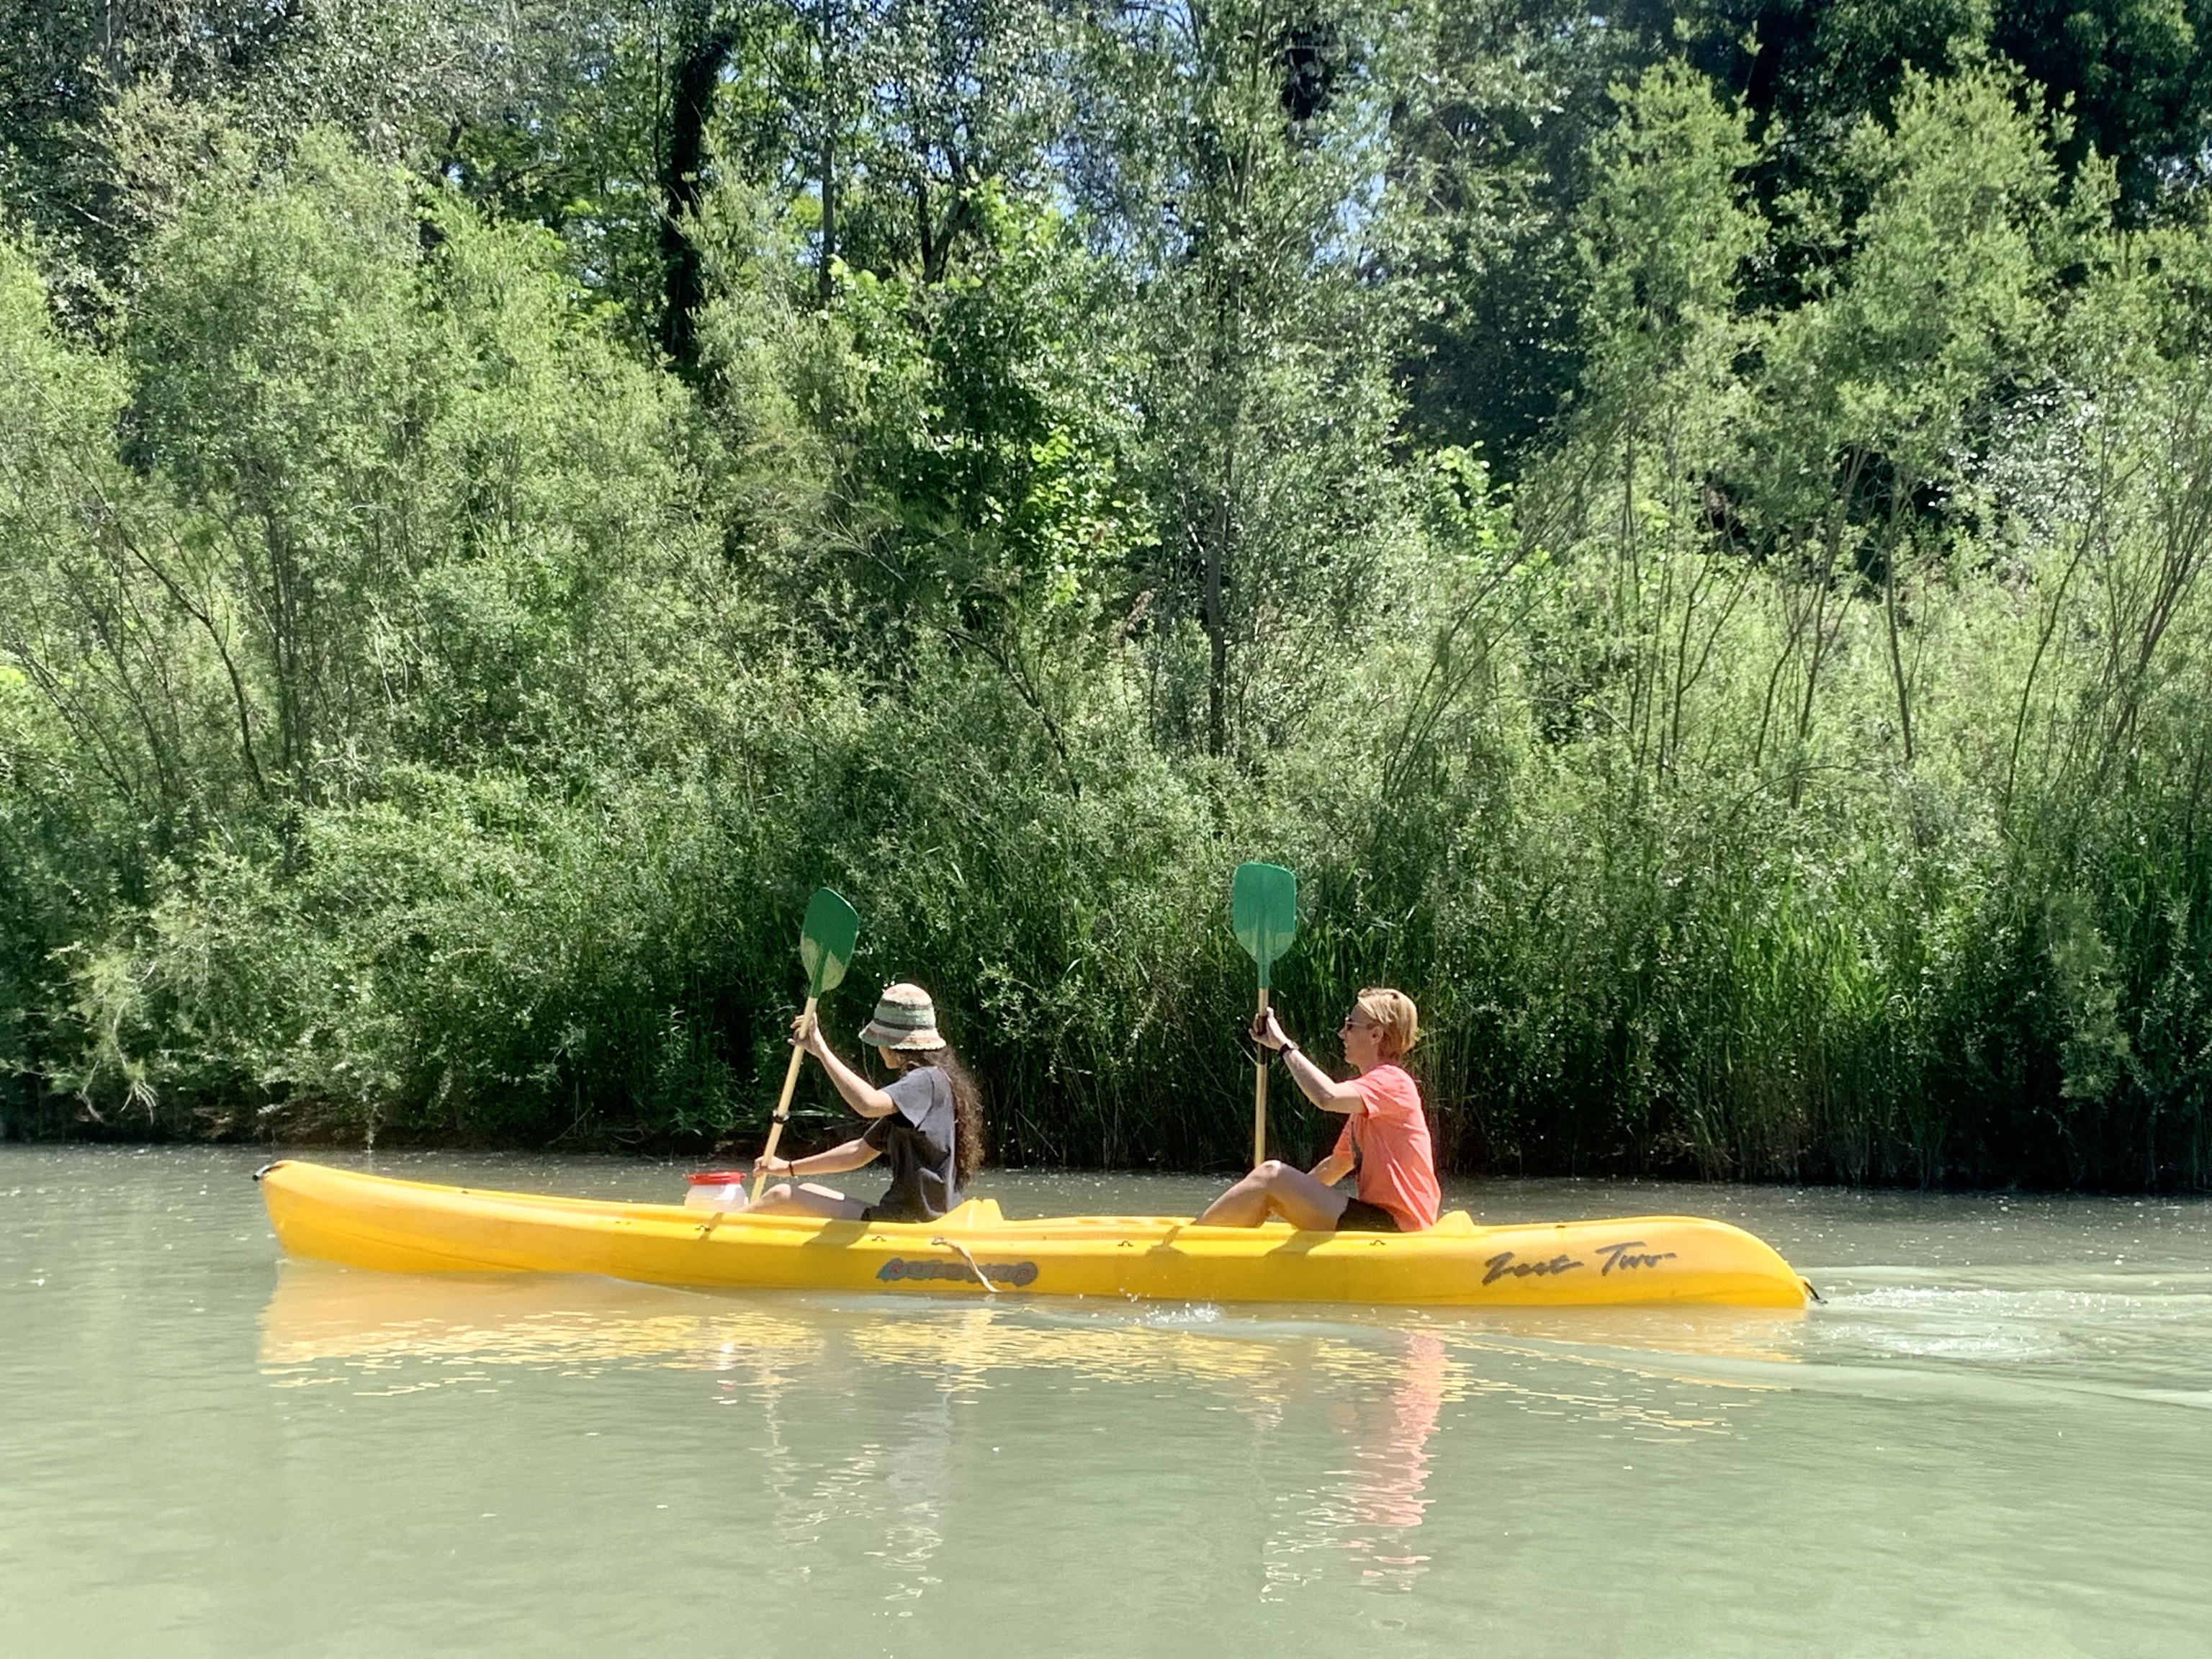 En kayak por el río Tajo.